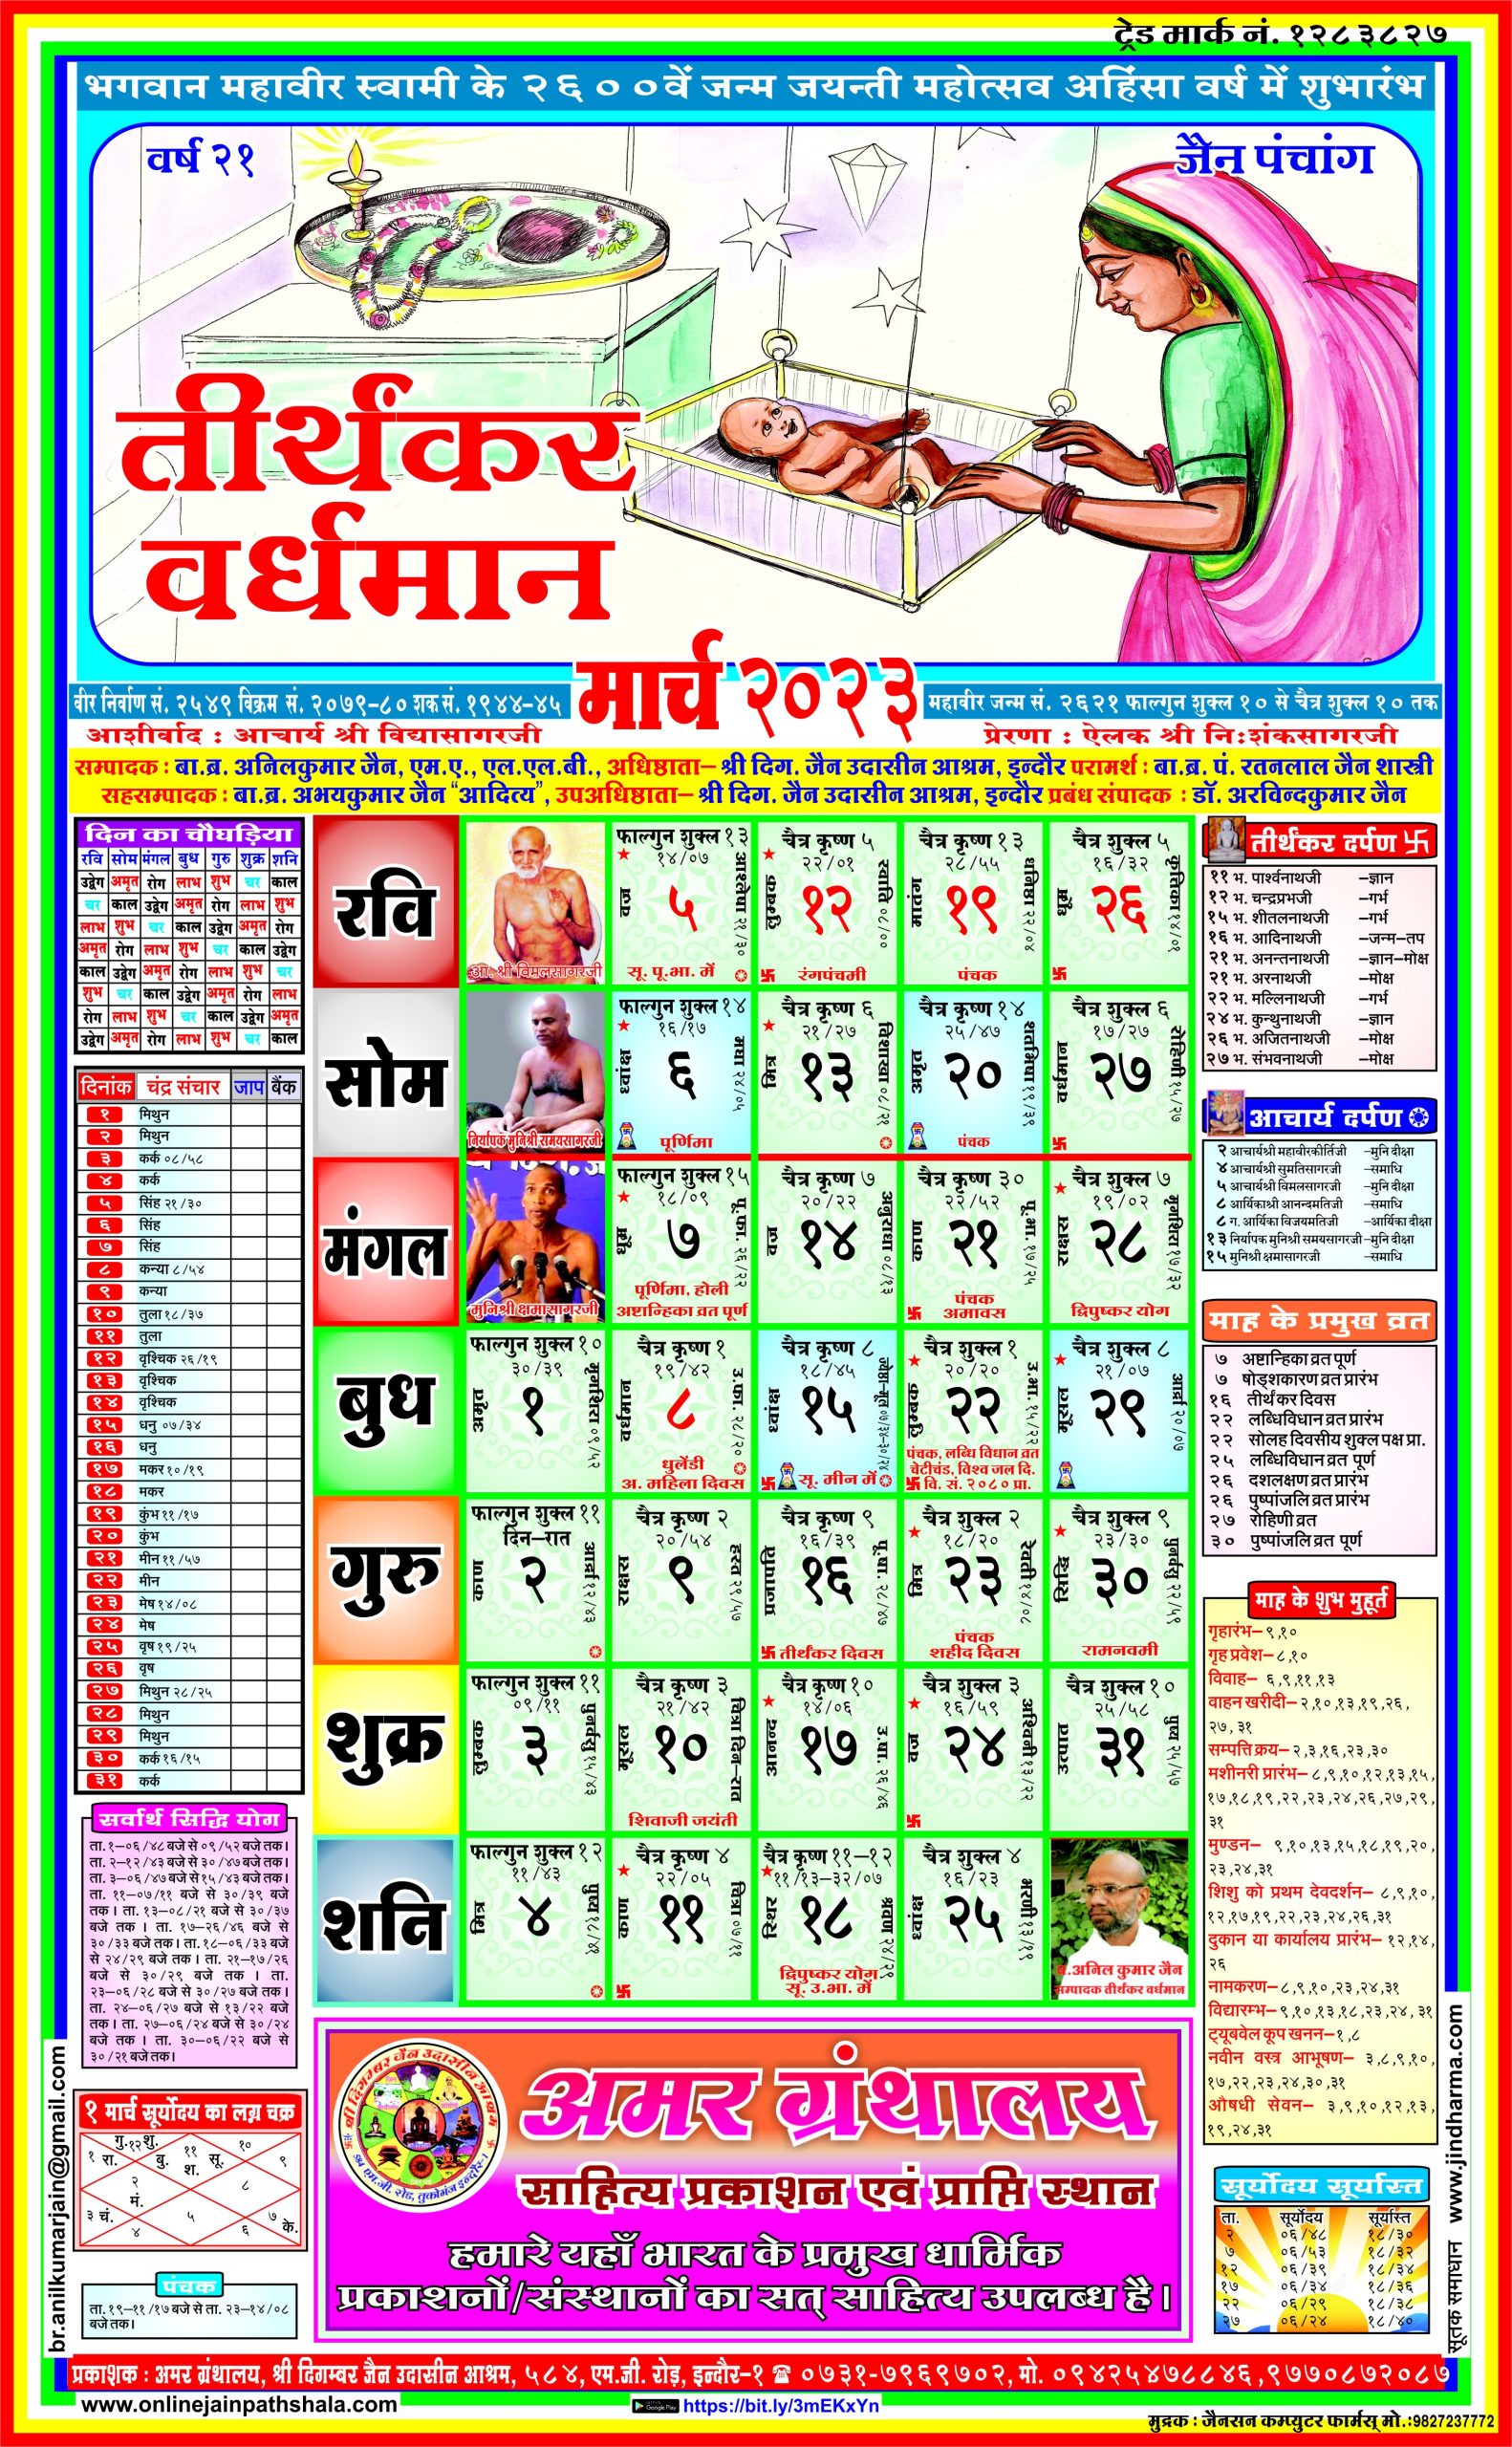 Jain Panchang 2023 PDF Jain Tithi Calendar 2023, Jain Parv and